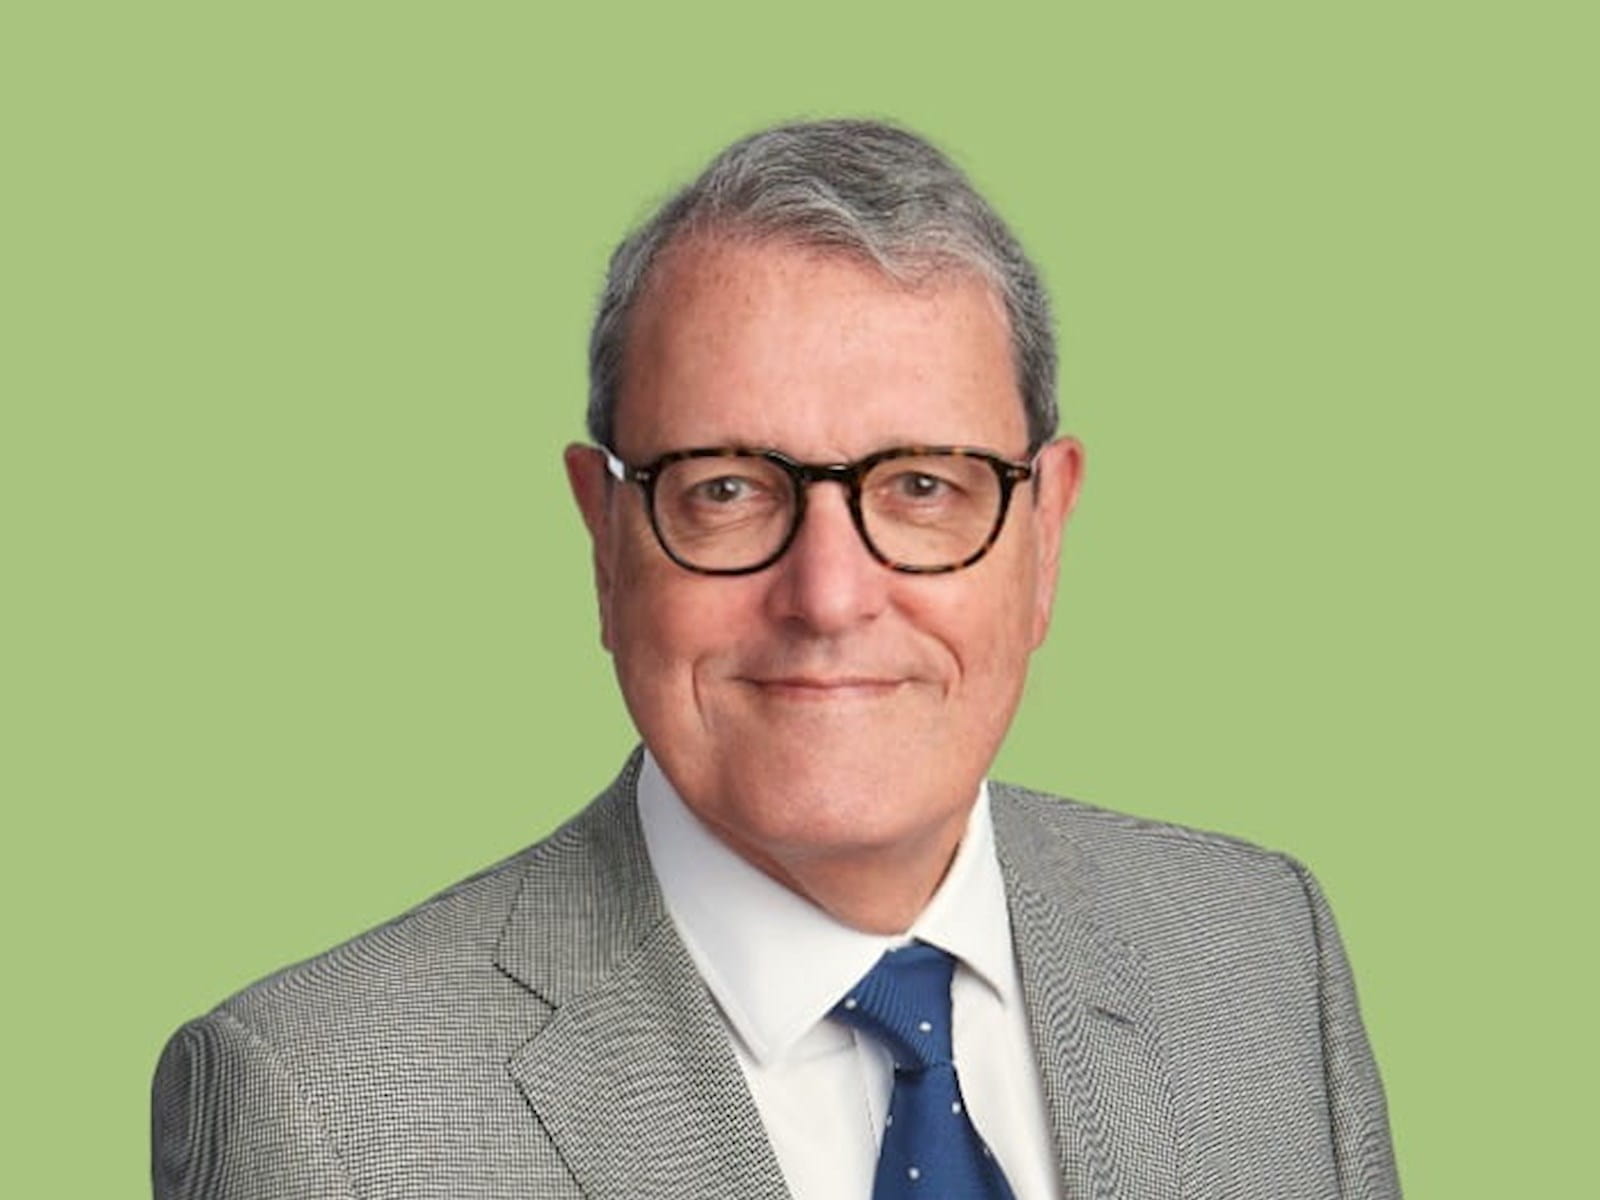 Mark Rhys, ICAEW President